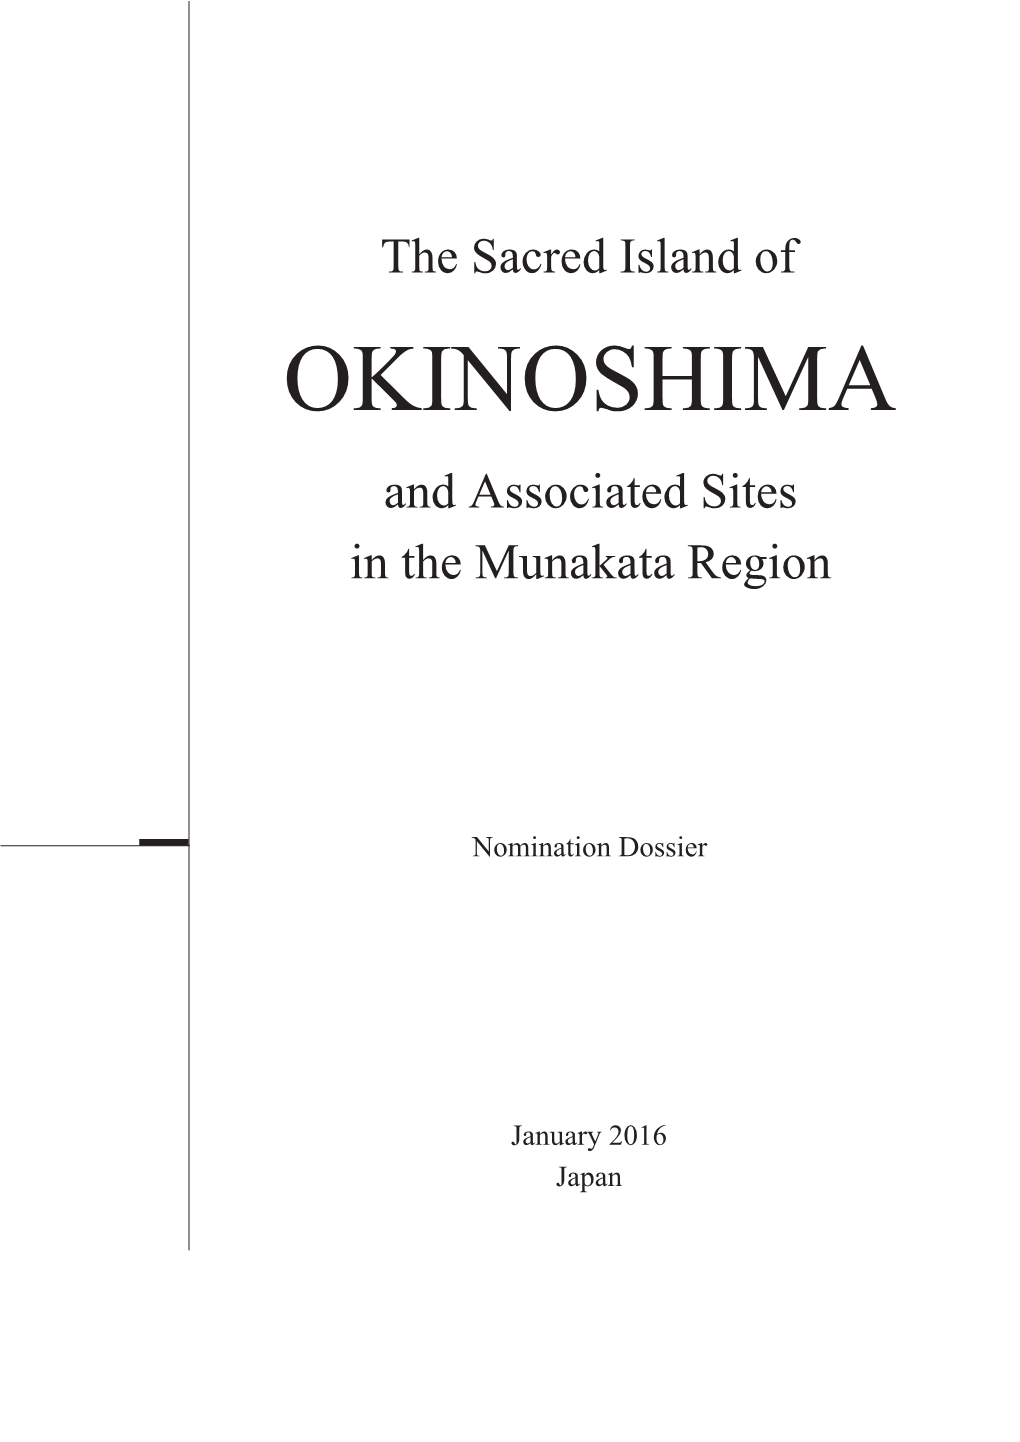 OKINOSHIMA and Associated Sites in the Munakata Region